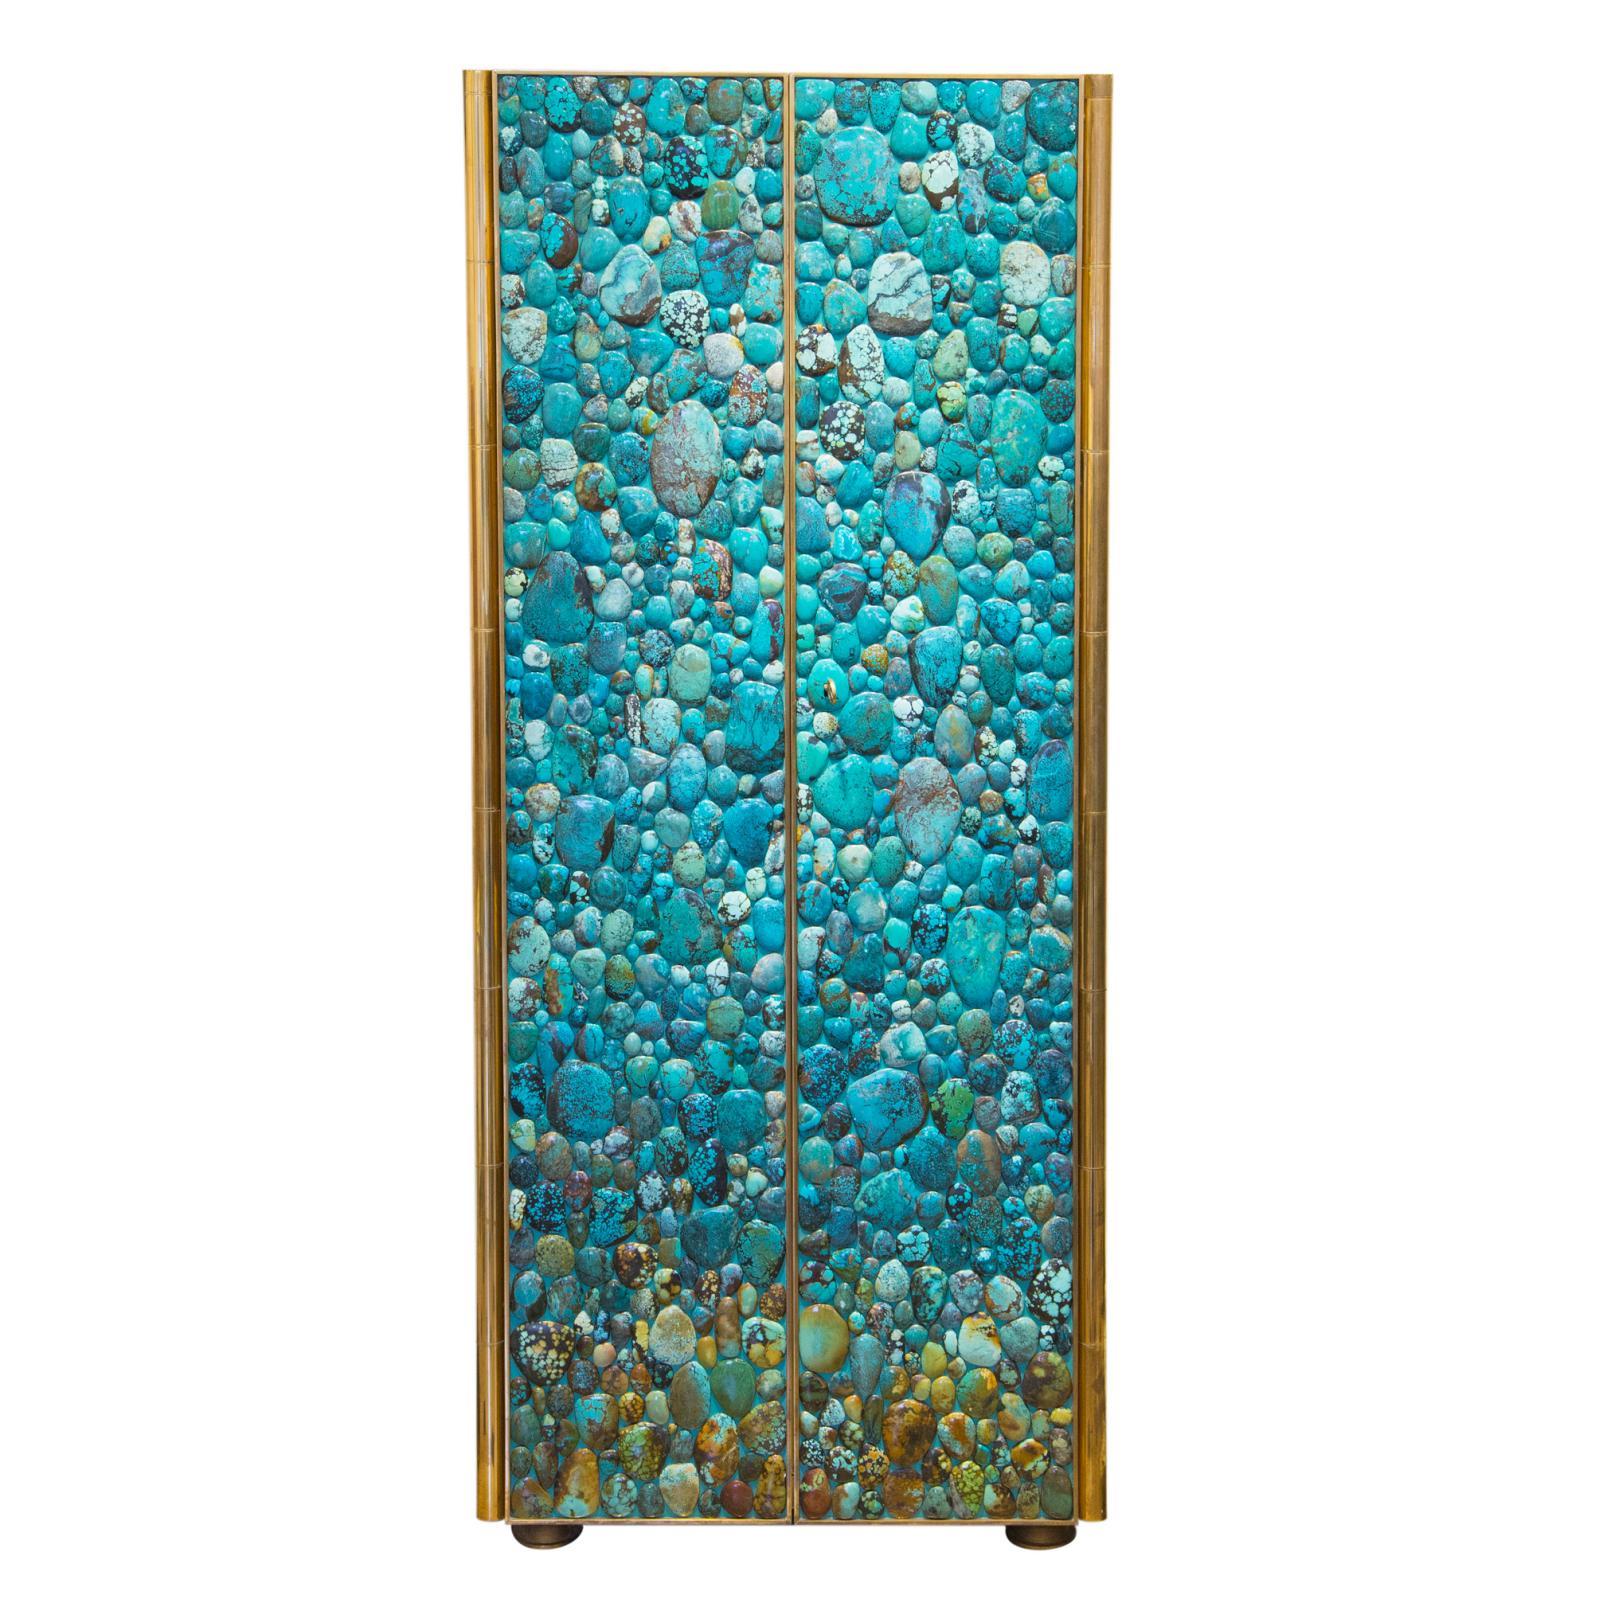 Kam Tin, France, 2014, cabinet Turquoise, structure en bois recouverte de cabochons de turquoise, piétement et finitions en laiton, 161 x 67 x 50 cm. 